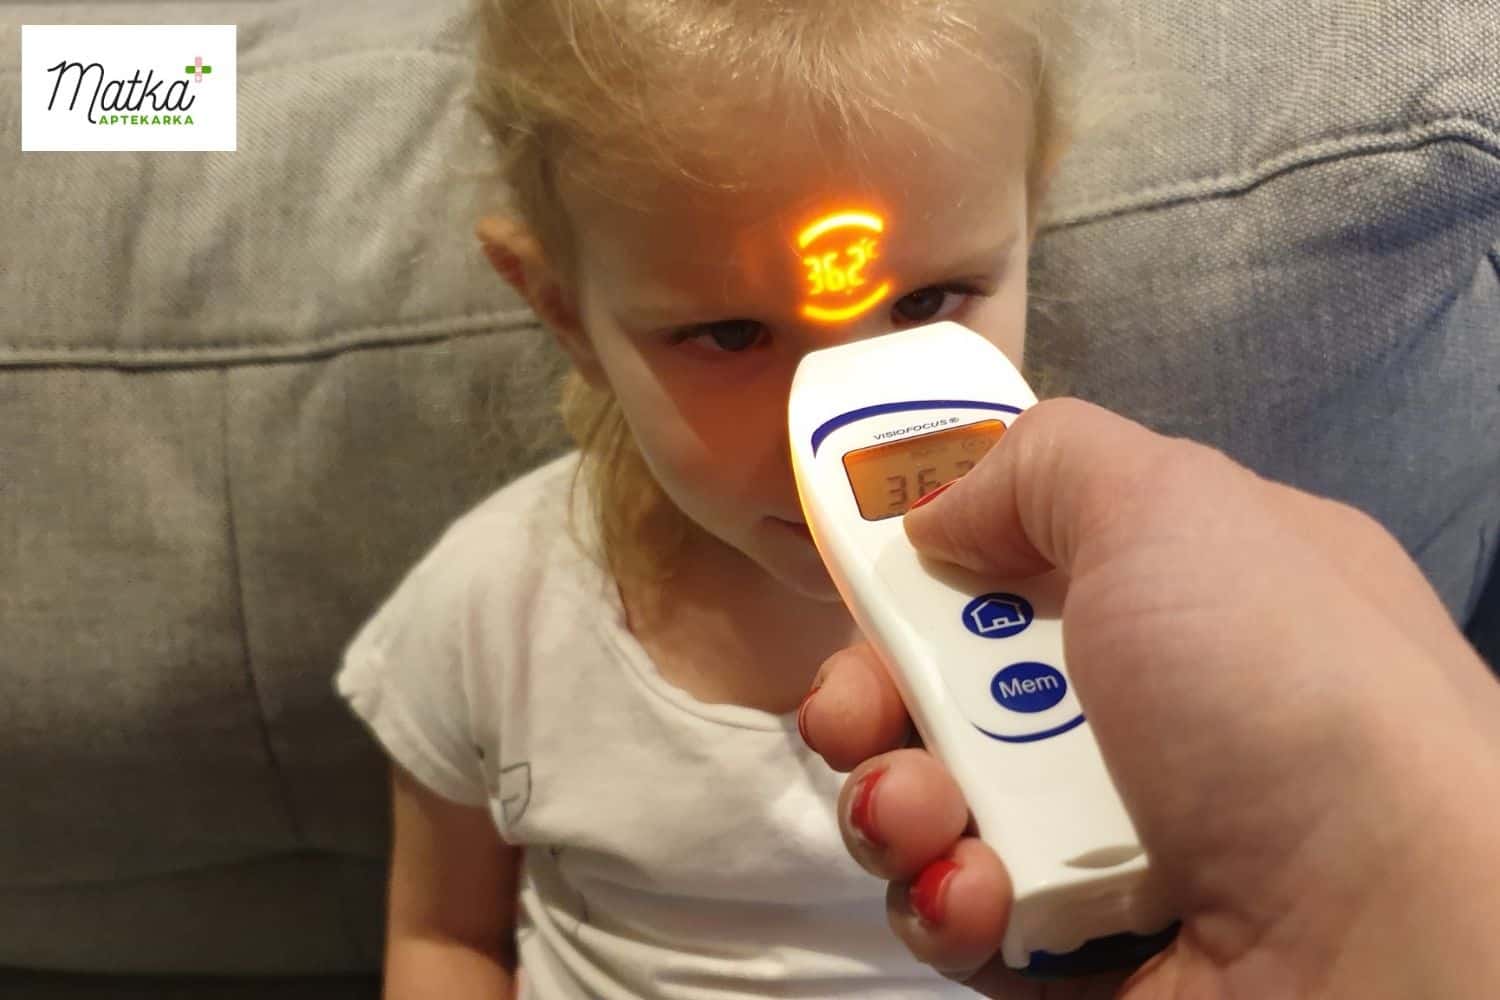 Termometr bezdotykowy Visiofocus 06400, jak wybrać termometr dla dziecka, najlepszy termometr dla małego dziecka Matka Aptekarka (6)